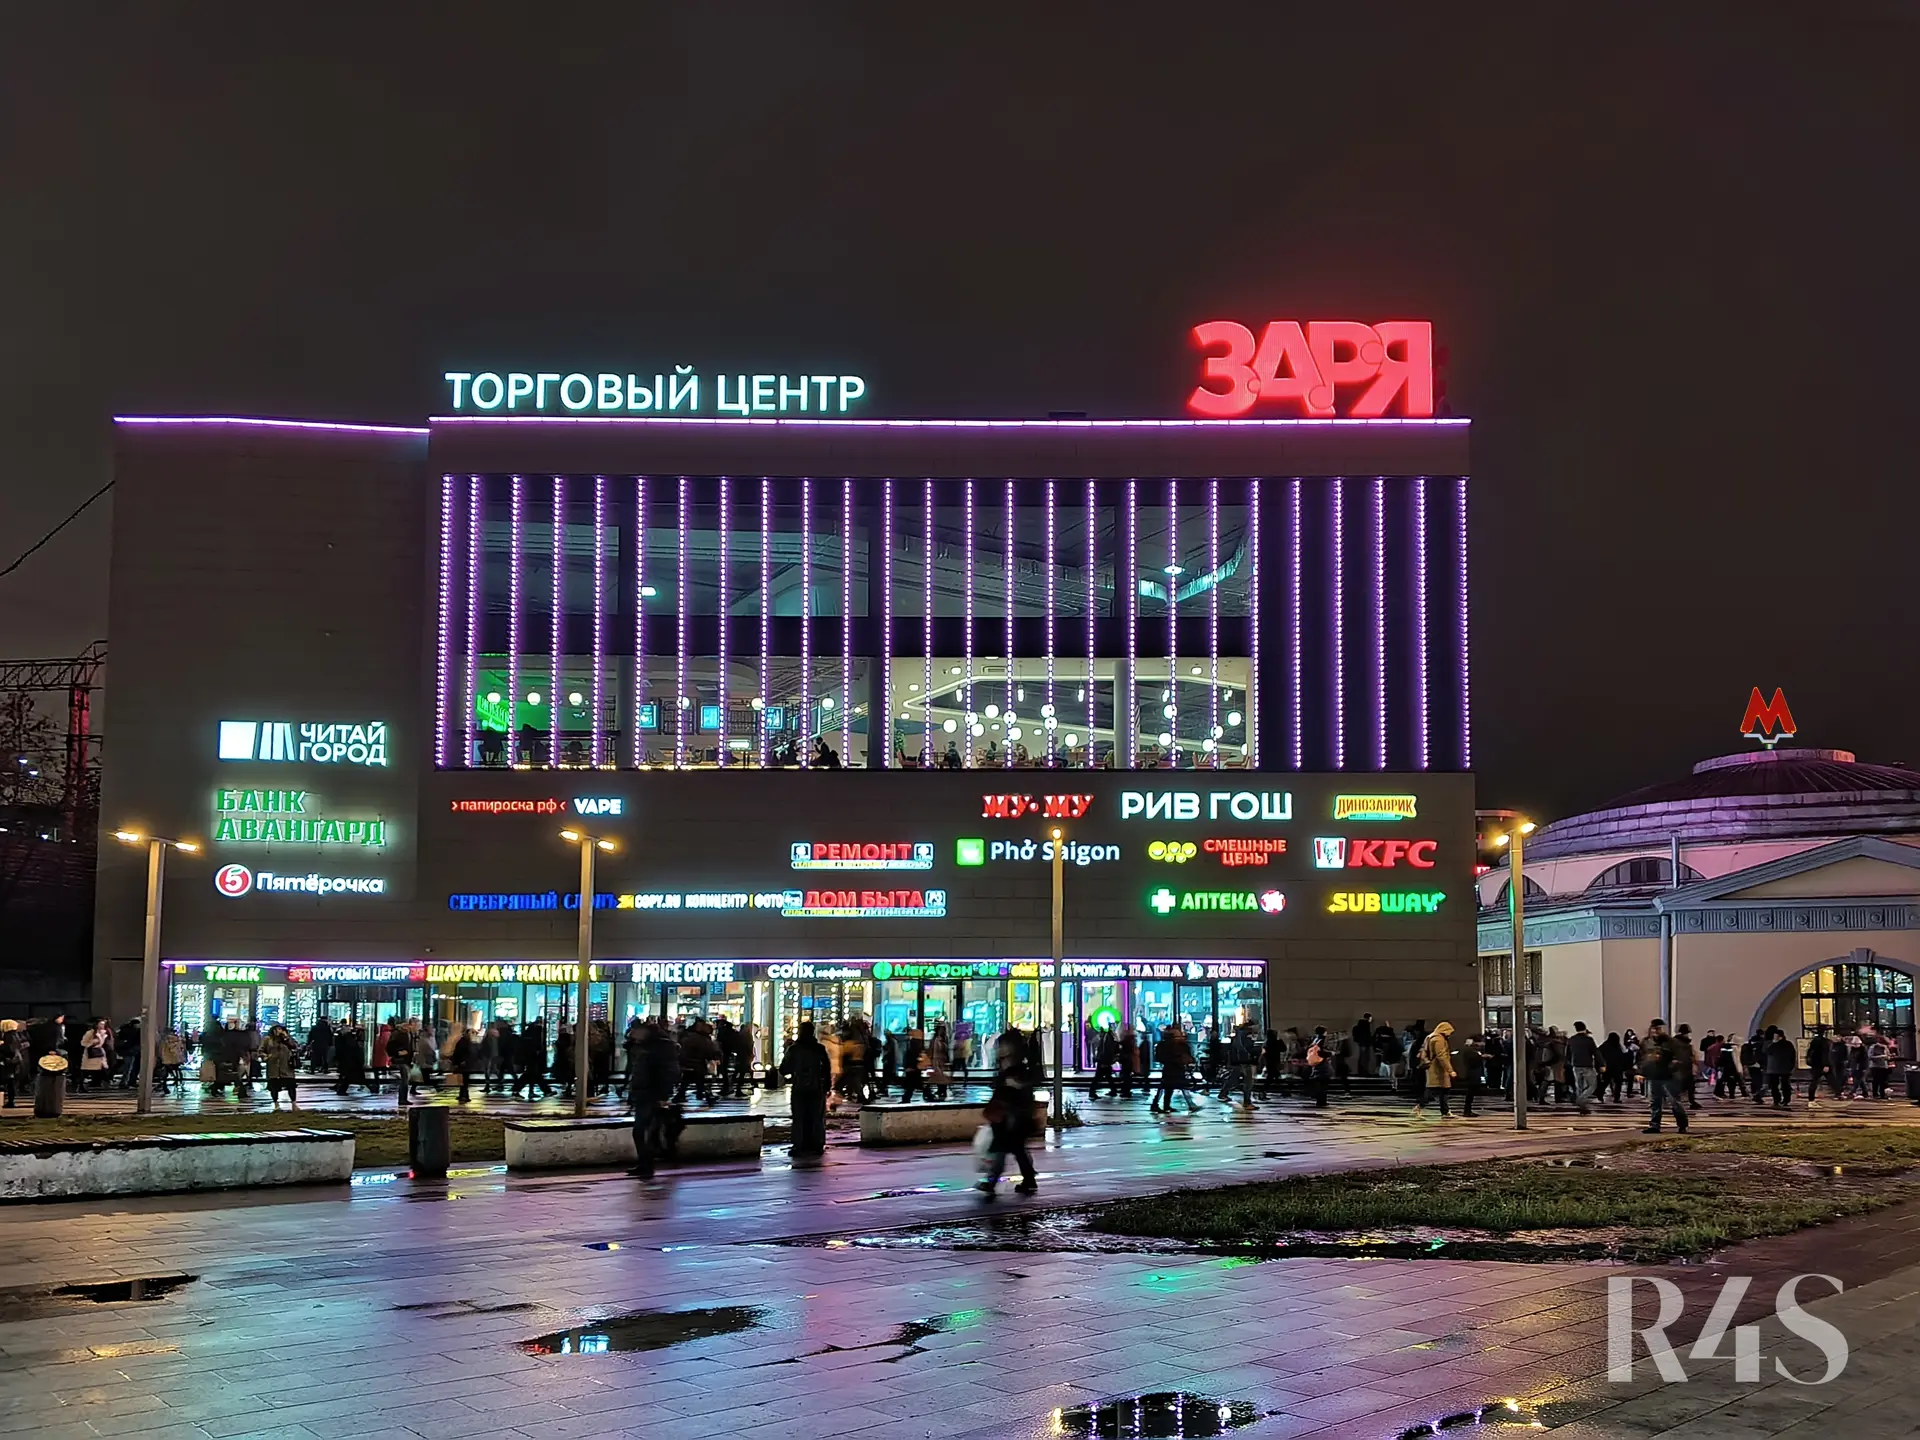 Продажа готового арендного бизнеса площадью 7290 м2 в Москве: Большая Семеновская, 20 ТЦ«ЗАРЯ» R4S | Realty4Sale